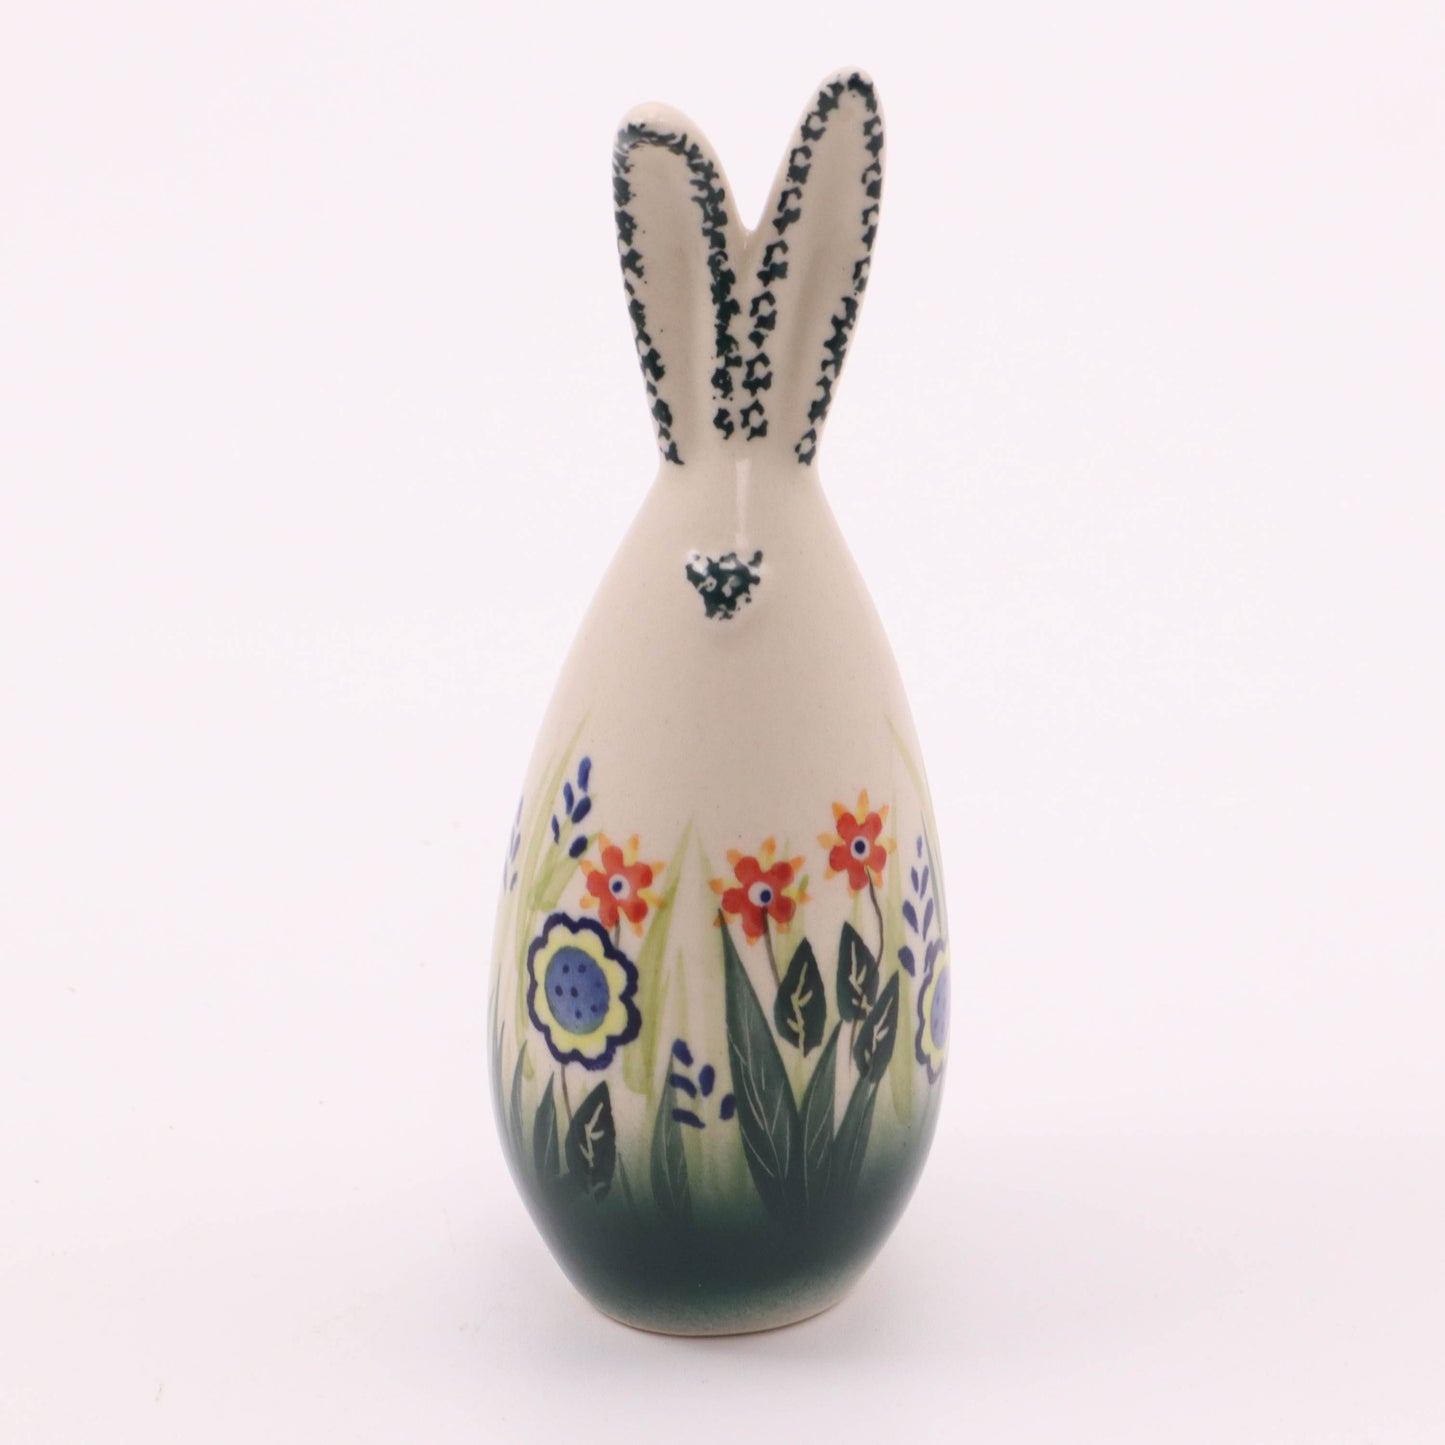 5" Bunny Figurine. Pattern: Grass W